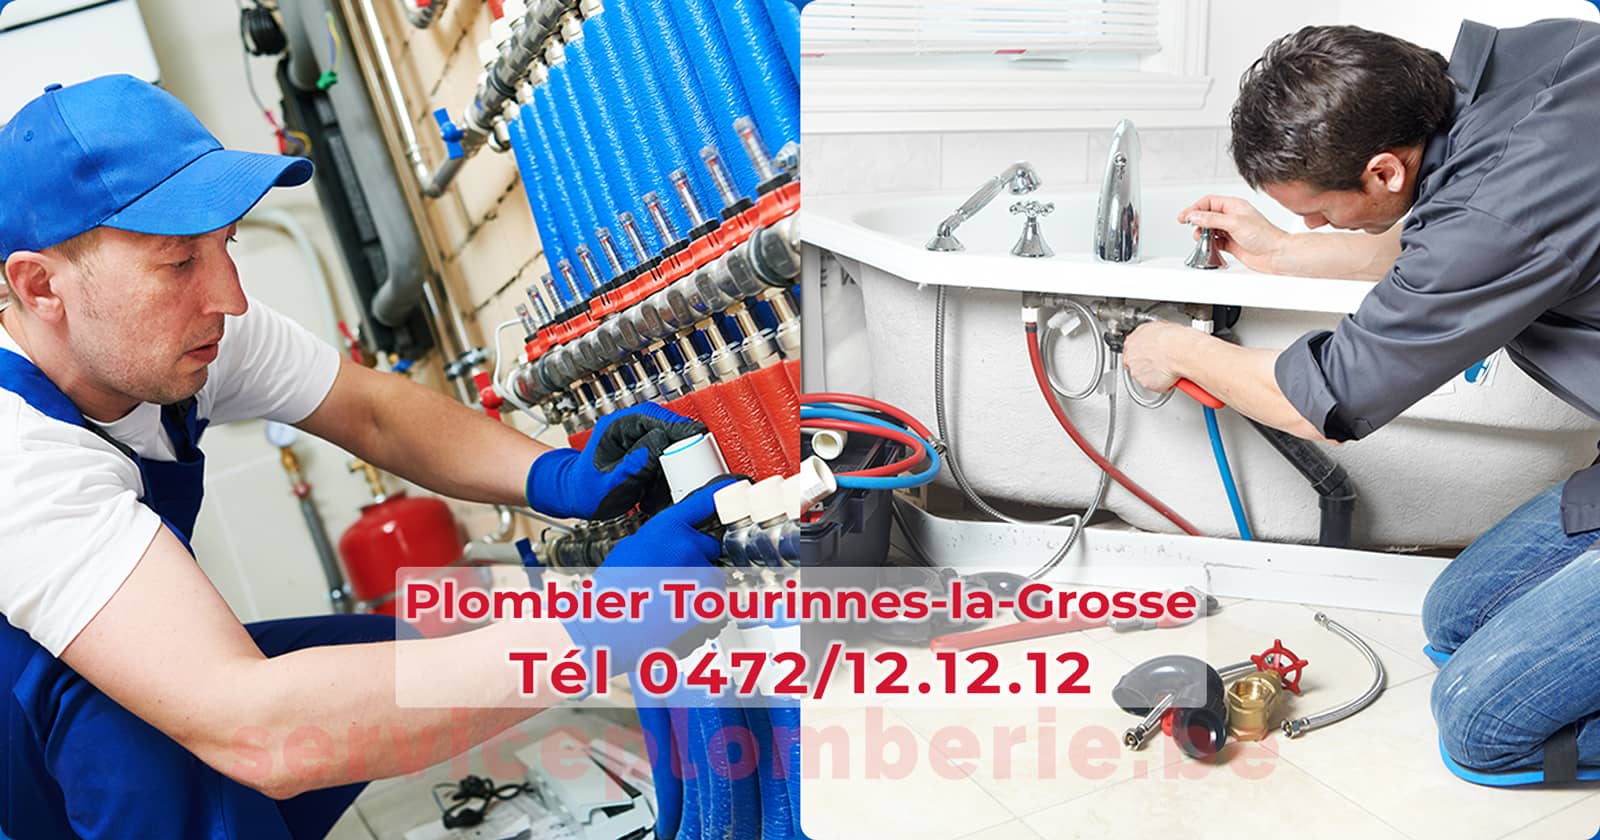 Plombier Tourinnes-la-Grosse Agréé Professionnel Service Plomberie Tél 0472/12.12.12